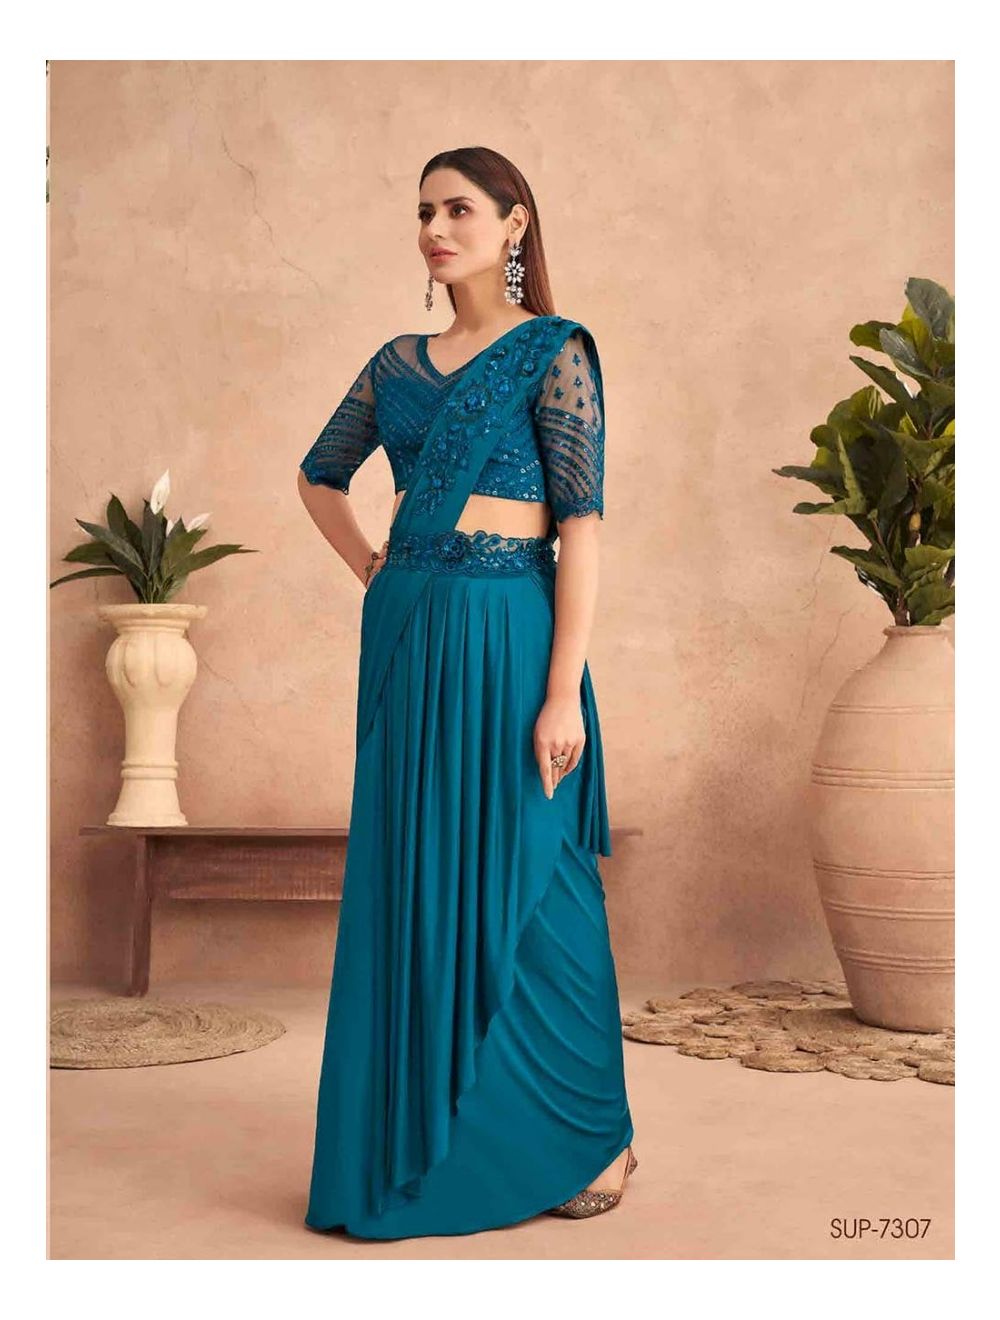 How To Wear Saree In Lehenga Style| साड़ी को लहंगे की तरह ड्रेप कैसे करें|  Saree Draping Karne Ke Tarike | how to wear saree in lehenga style |  HerZindagi